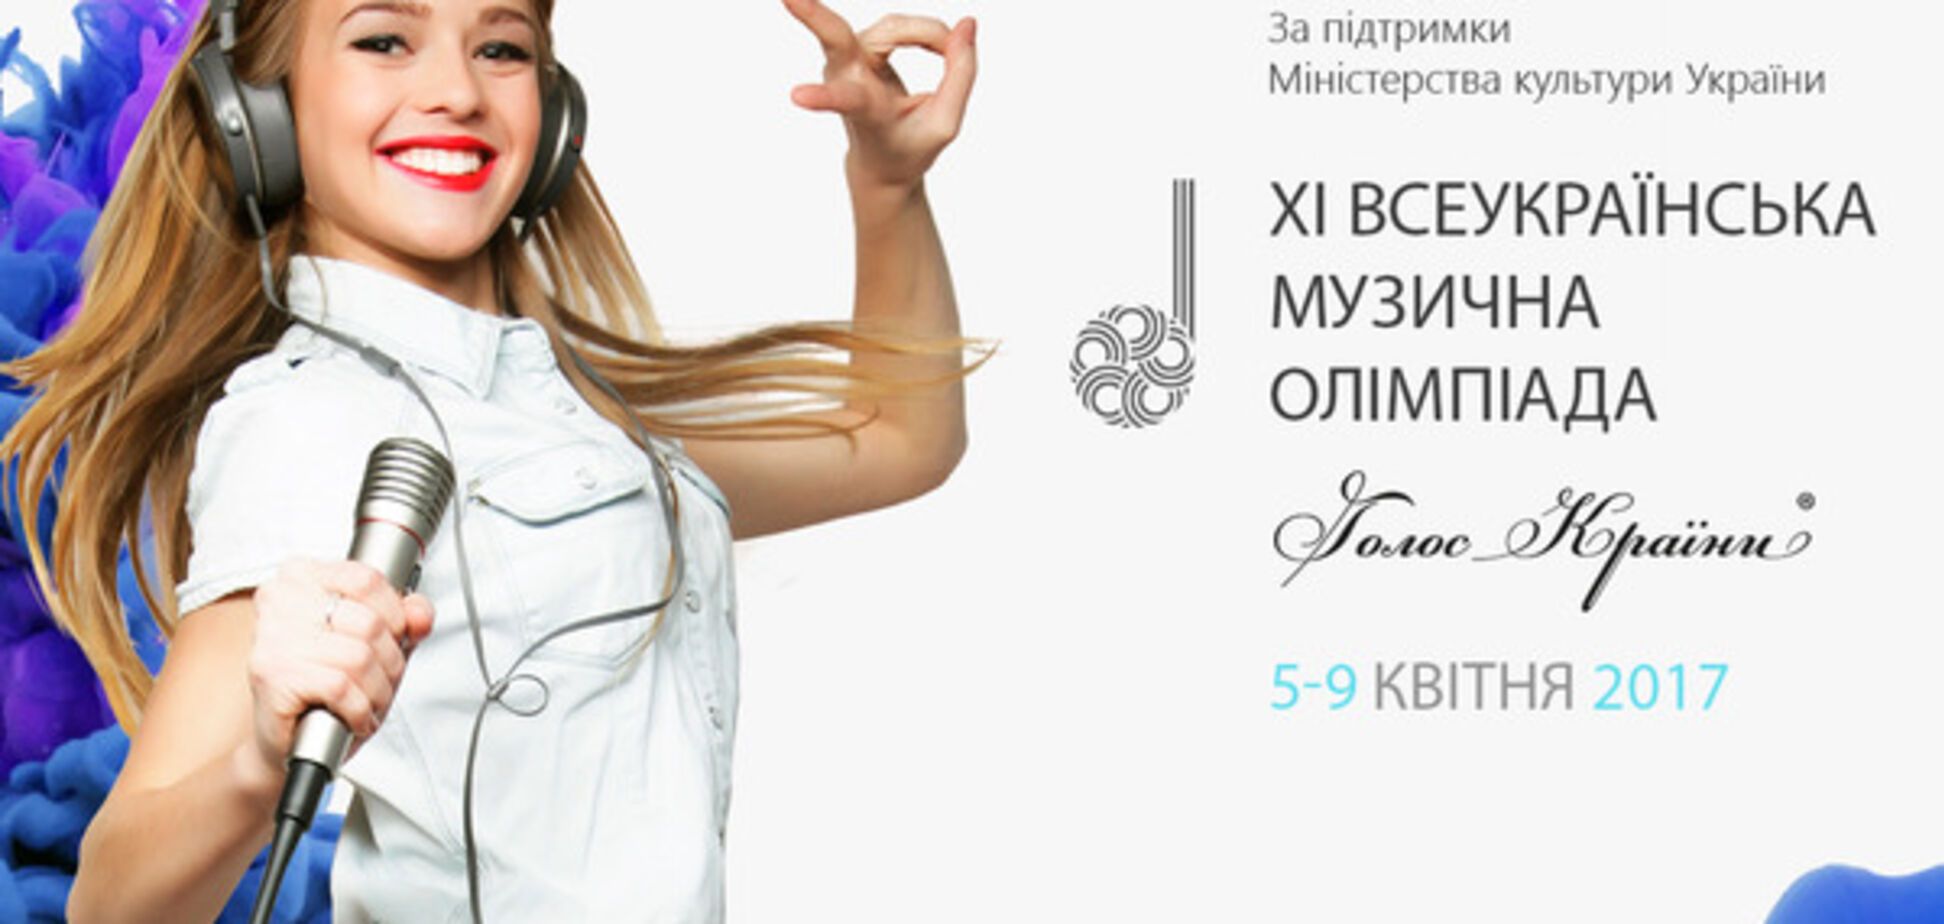 XI Всеукраинская музыкальная олимпиада  'Голос Країни' состоится 5-9 апреля